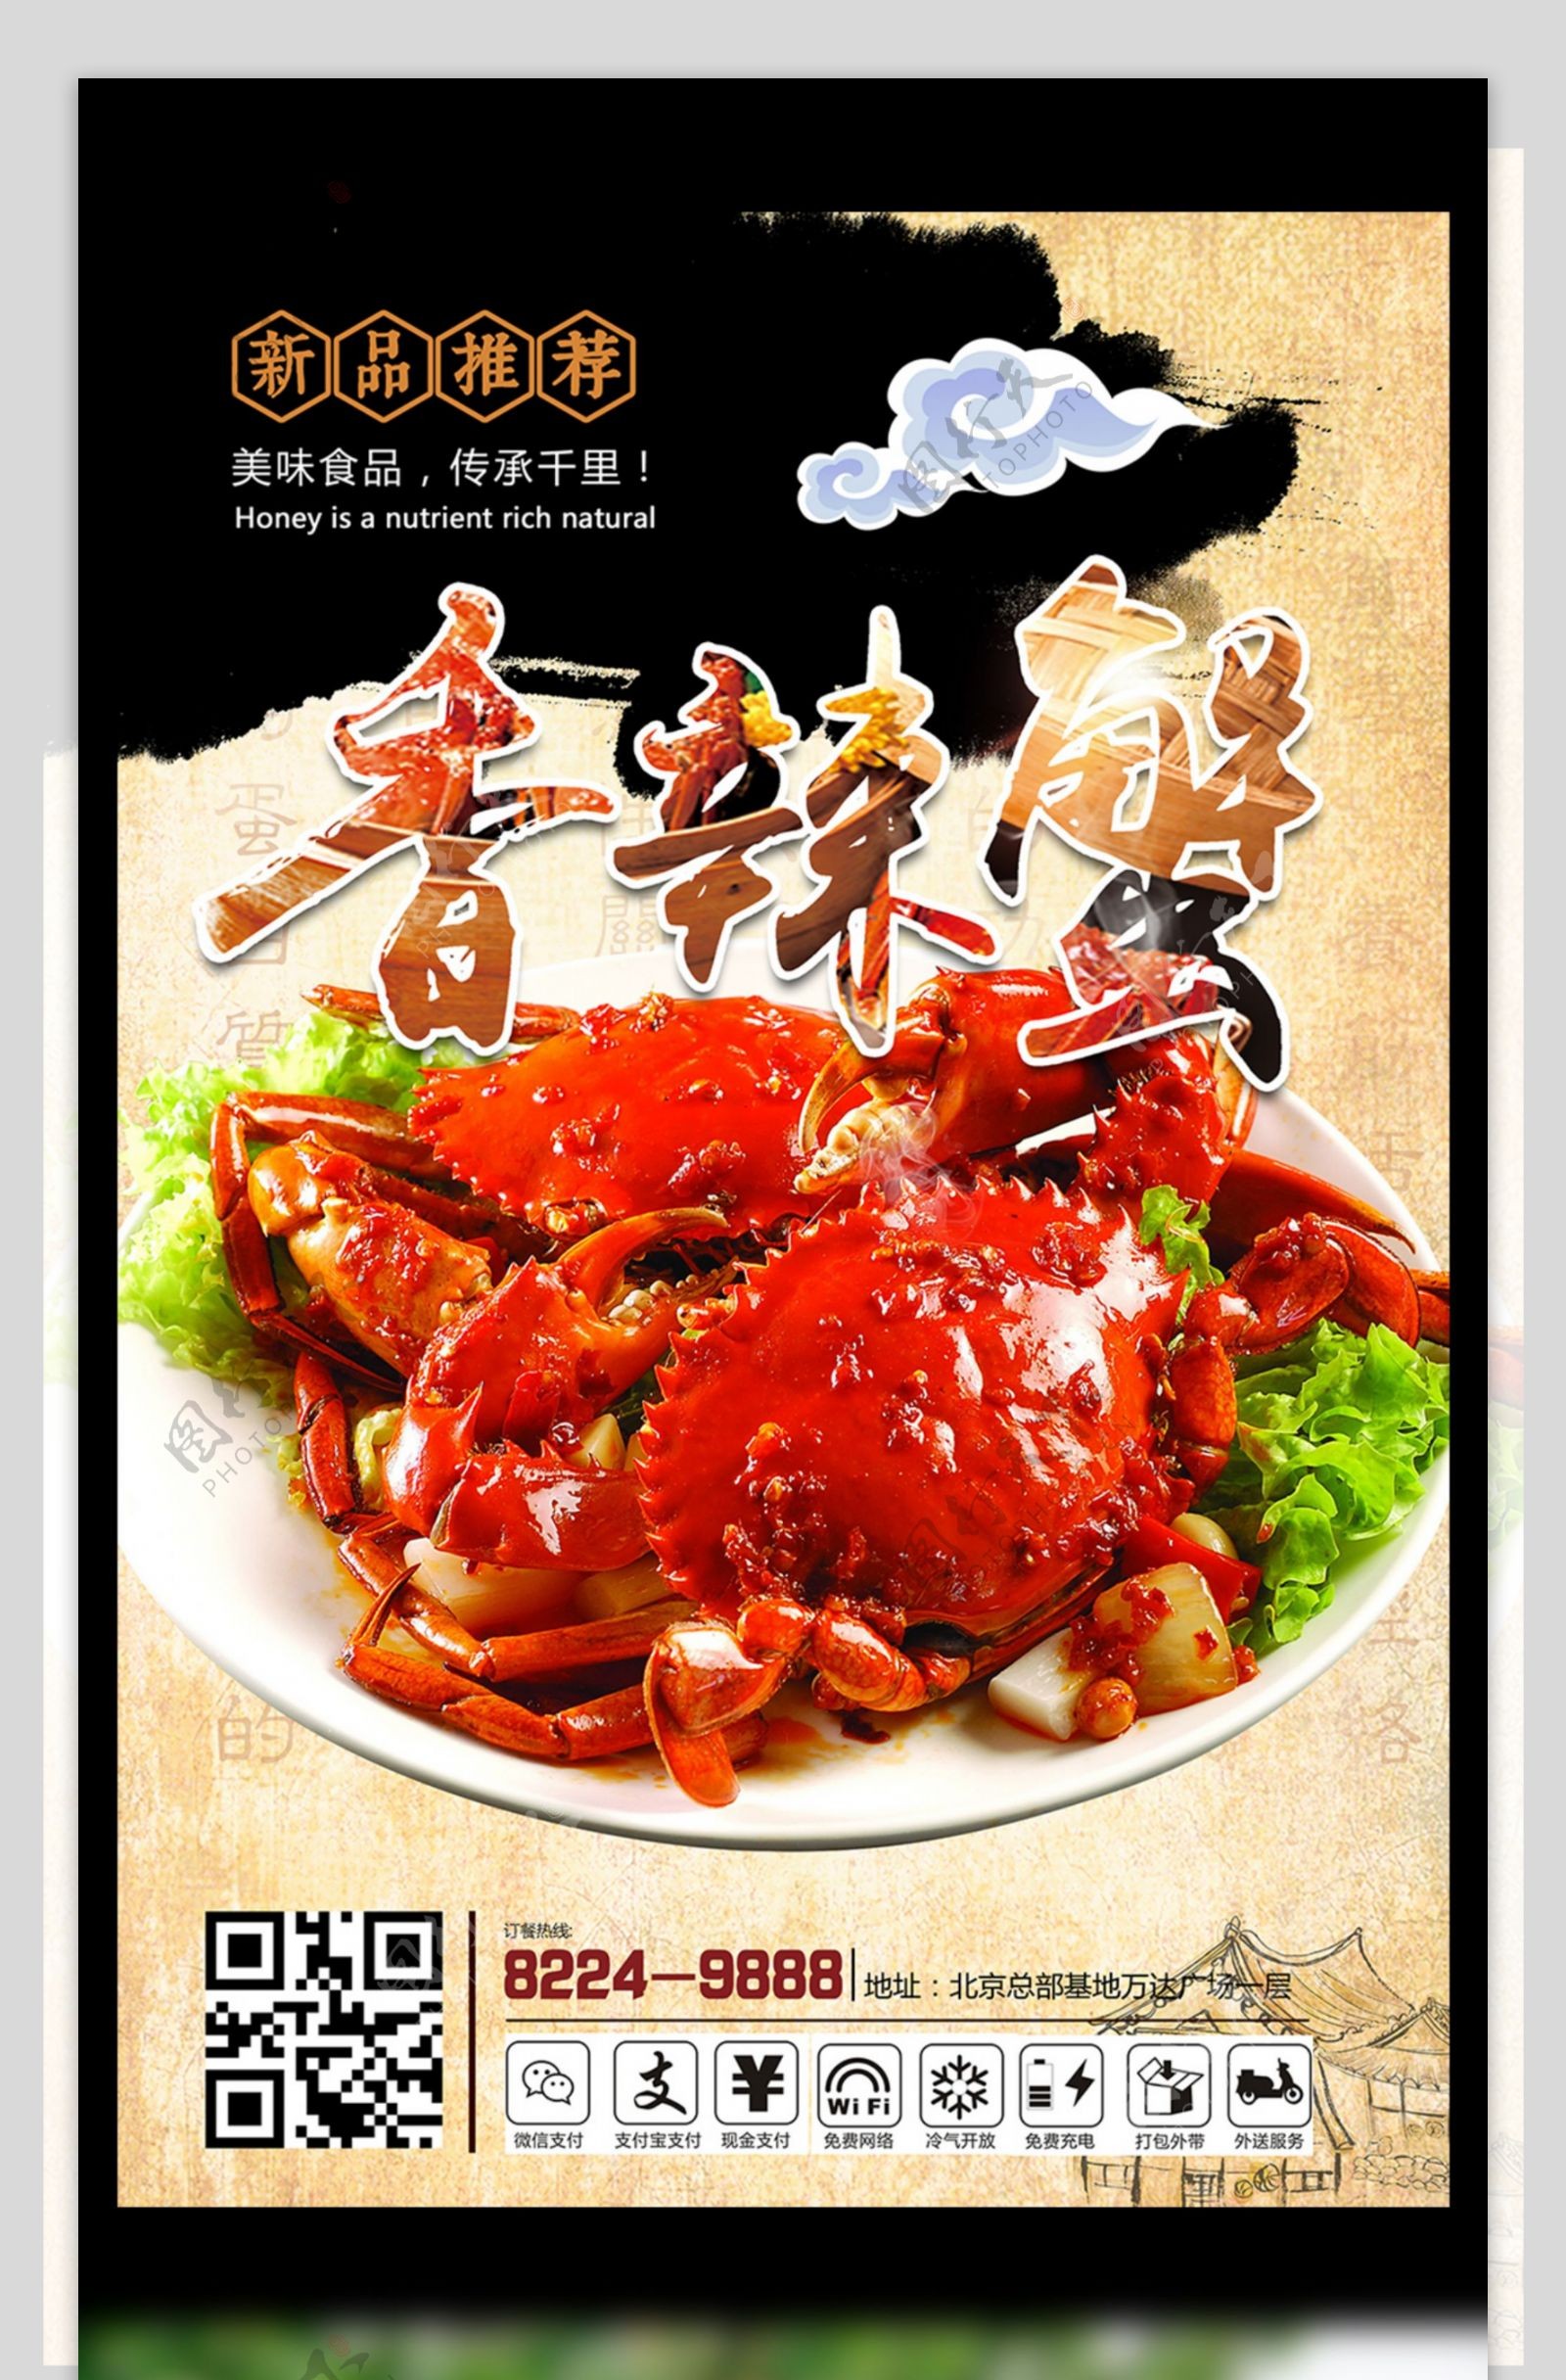 中国风简约唯美时尚美食大闸蟹餐饮海报设计